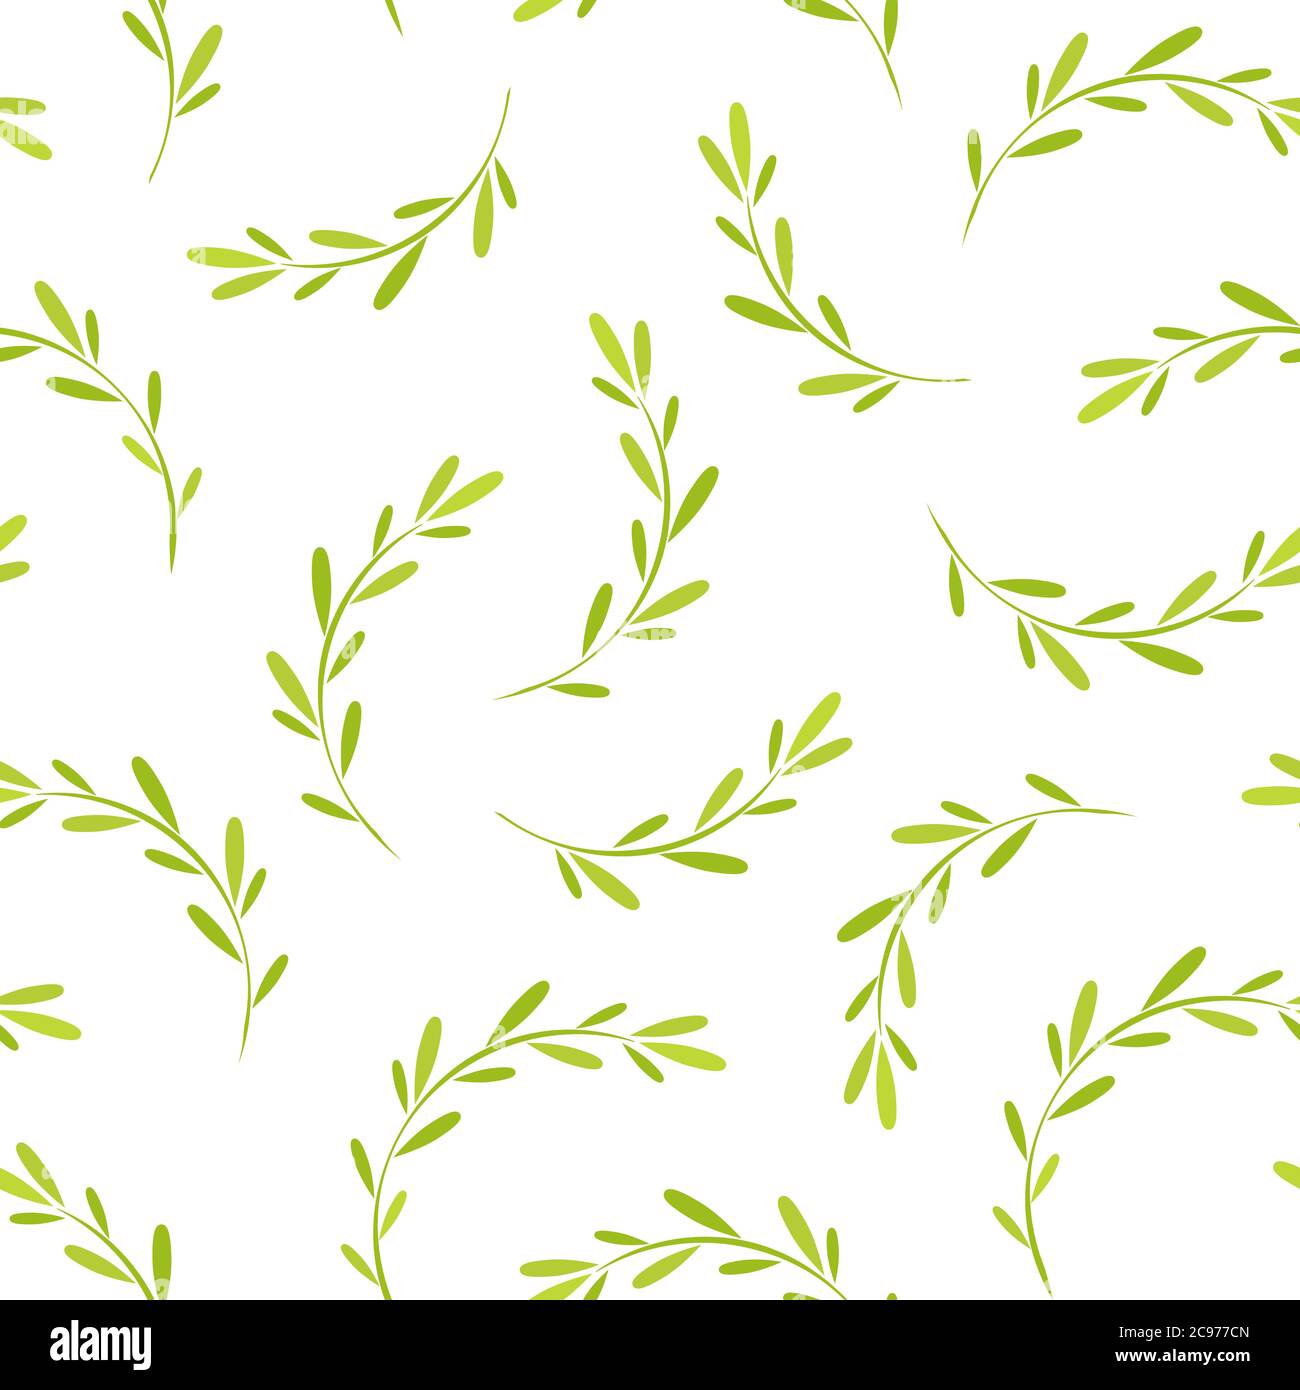 Motif fleuri sans couture avec petites lames d'herbe vert vif. Texture florale sur fond blanc. Branches de merde dessinées à la main avec des tracts pointus. Pour Illustration de Vecteur